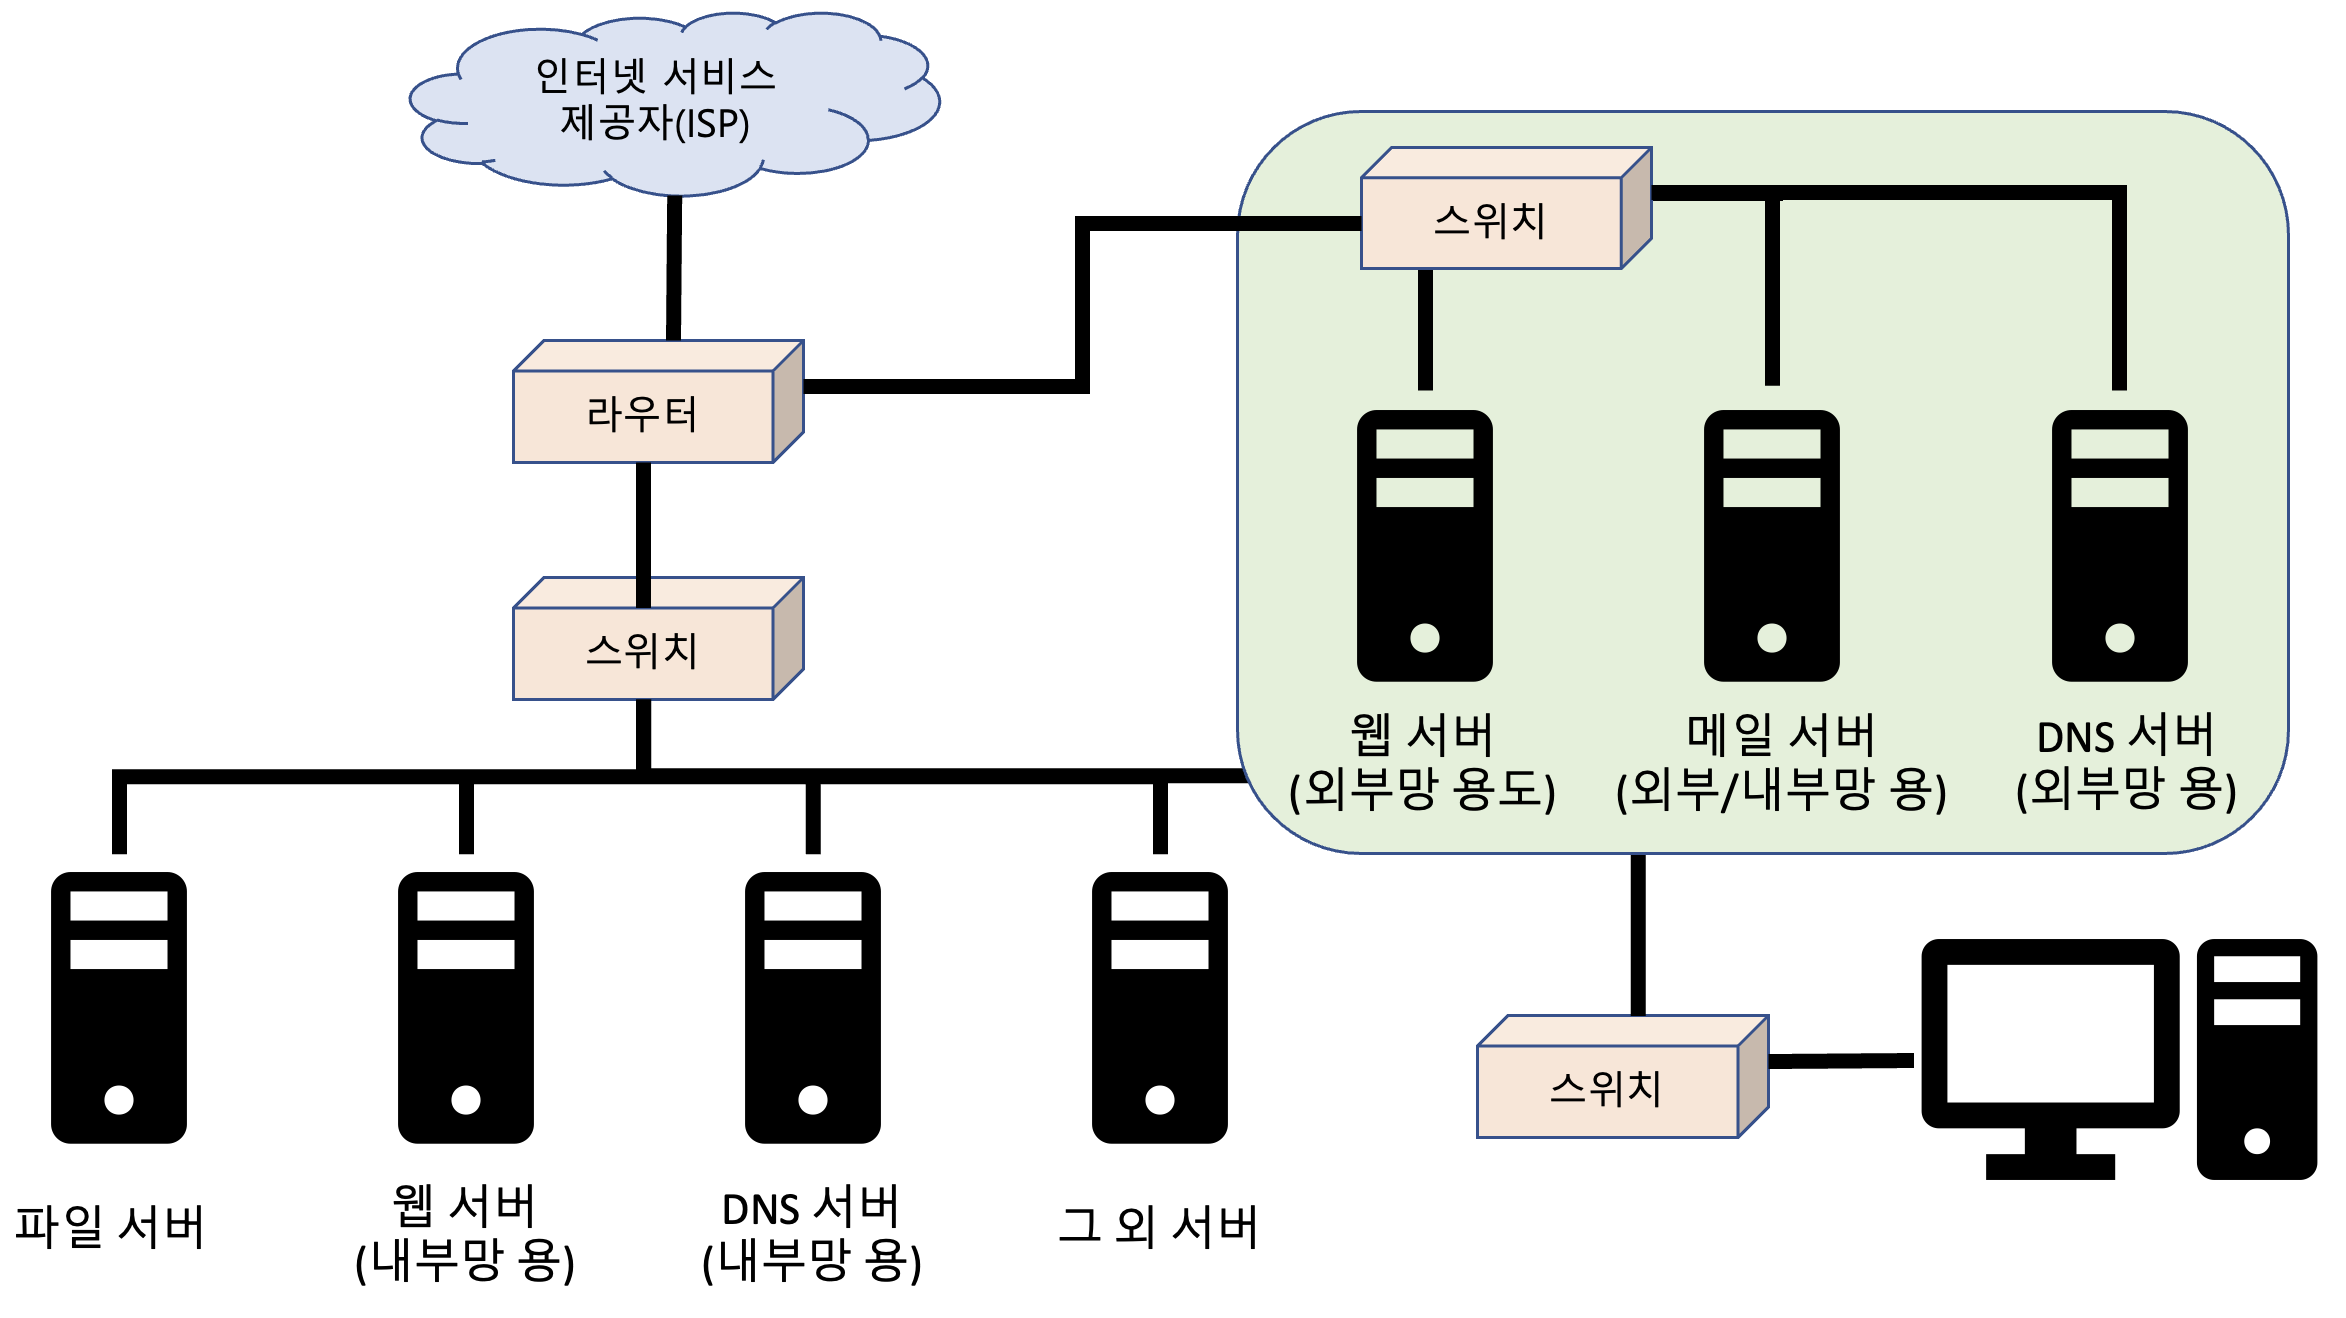 [네트워크/Network]  기초 용어 설명 및 LAN / WAN 구성